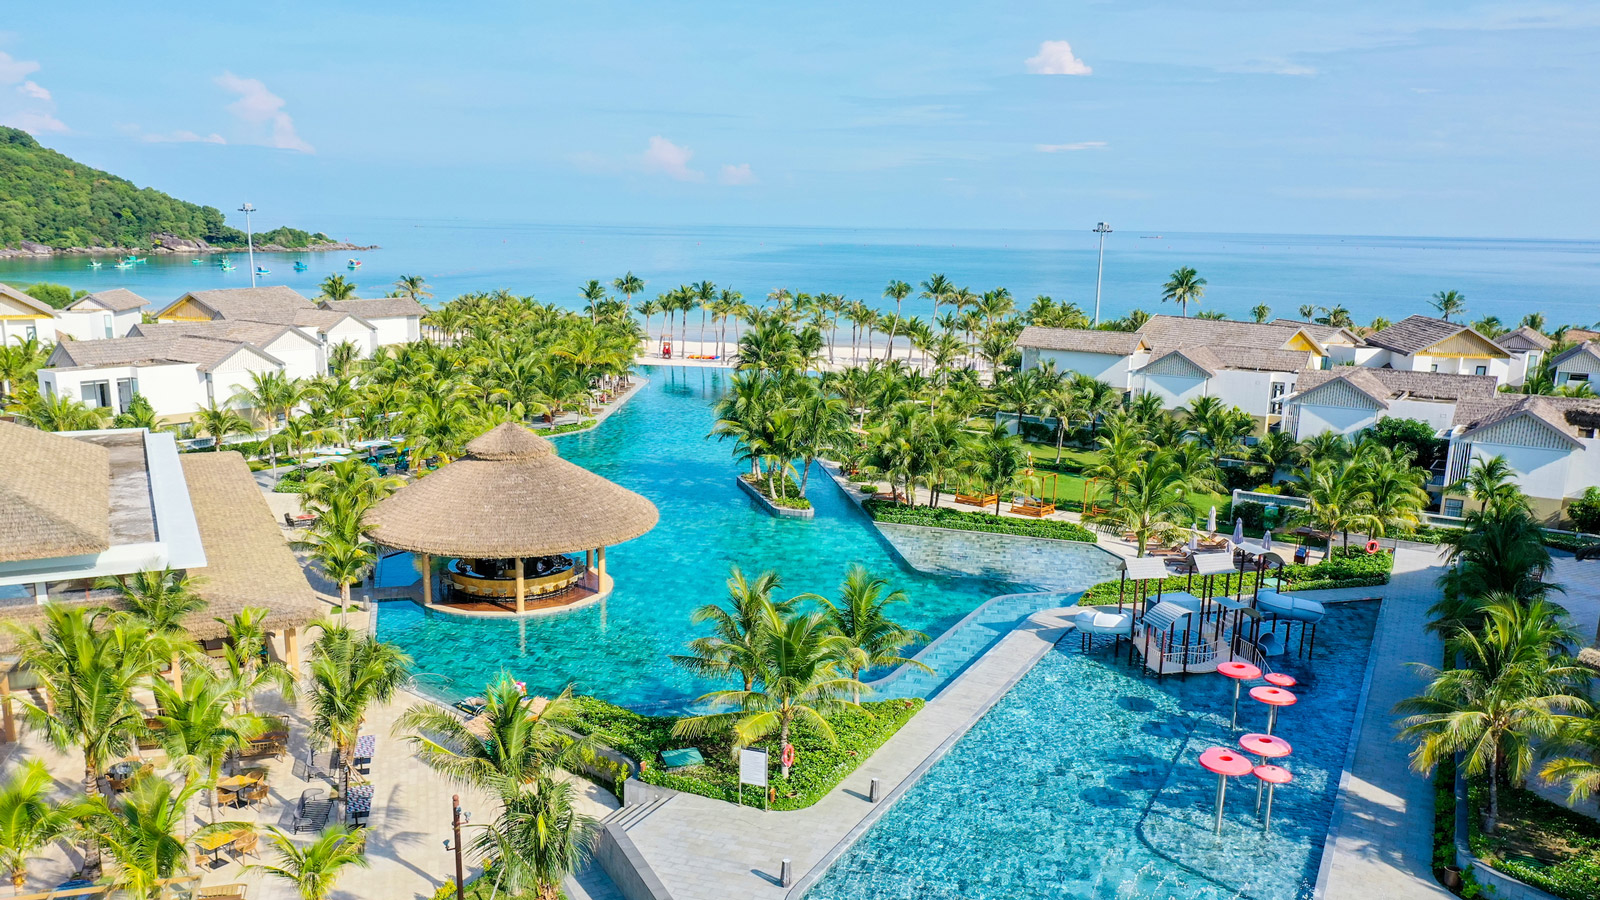 New World Phú Quốc – Khu nghỉ dưỡng bên bờ biển dành cho gia đình hàng đầu Châu Á 2022